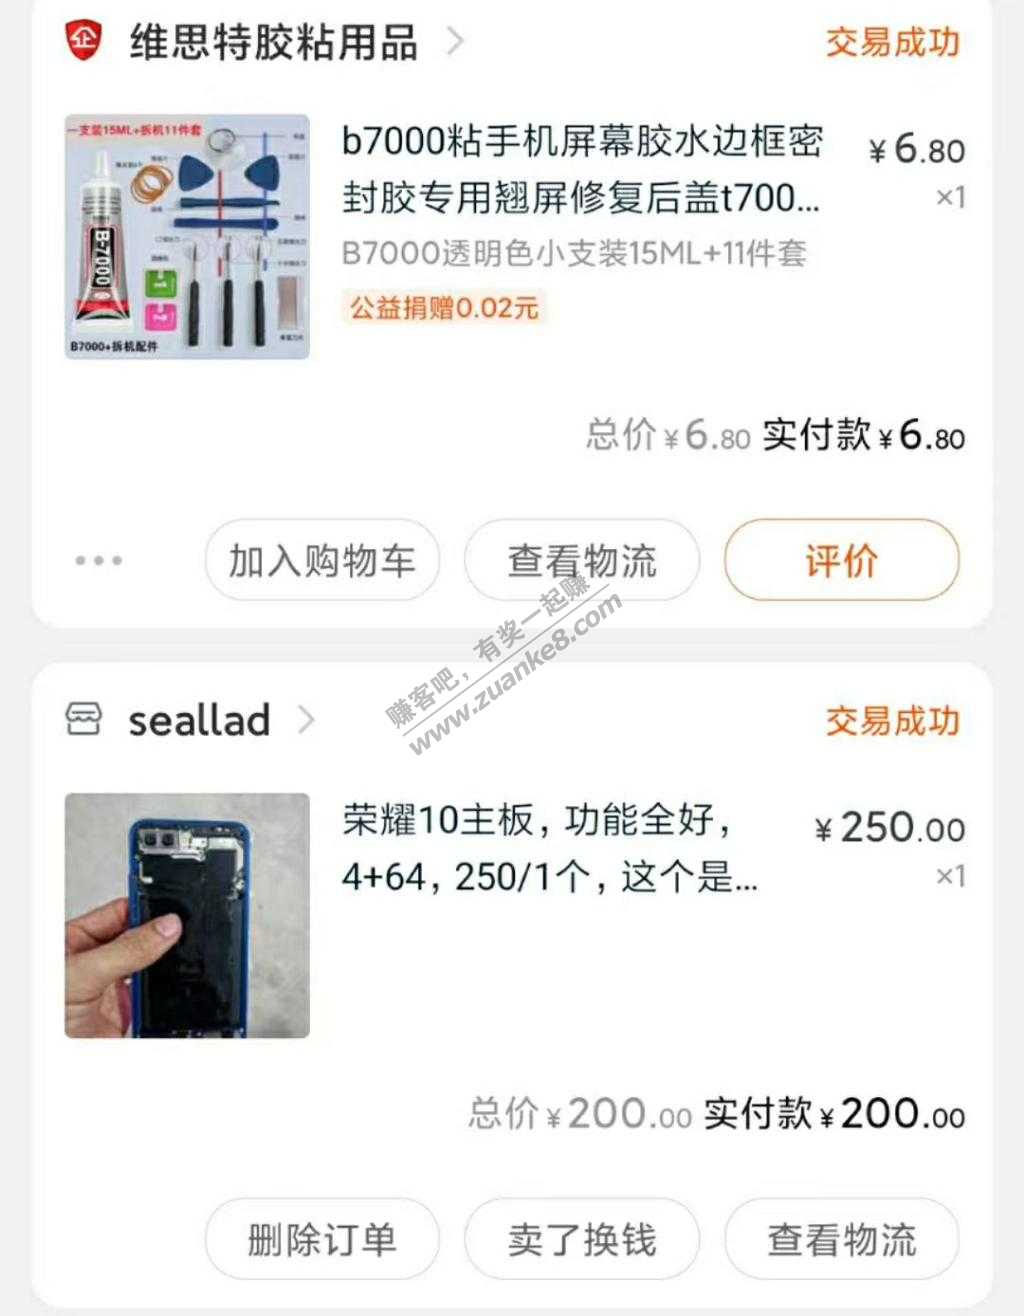 500元拼装一台二手荣耀10手机-惠小助(52huixz.com)